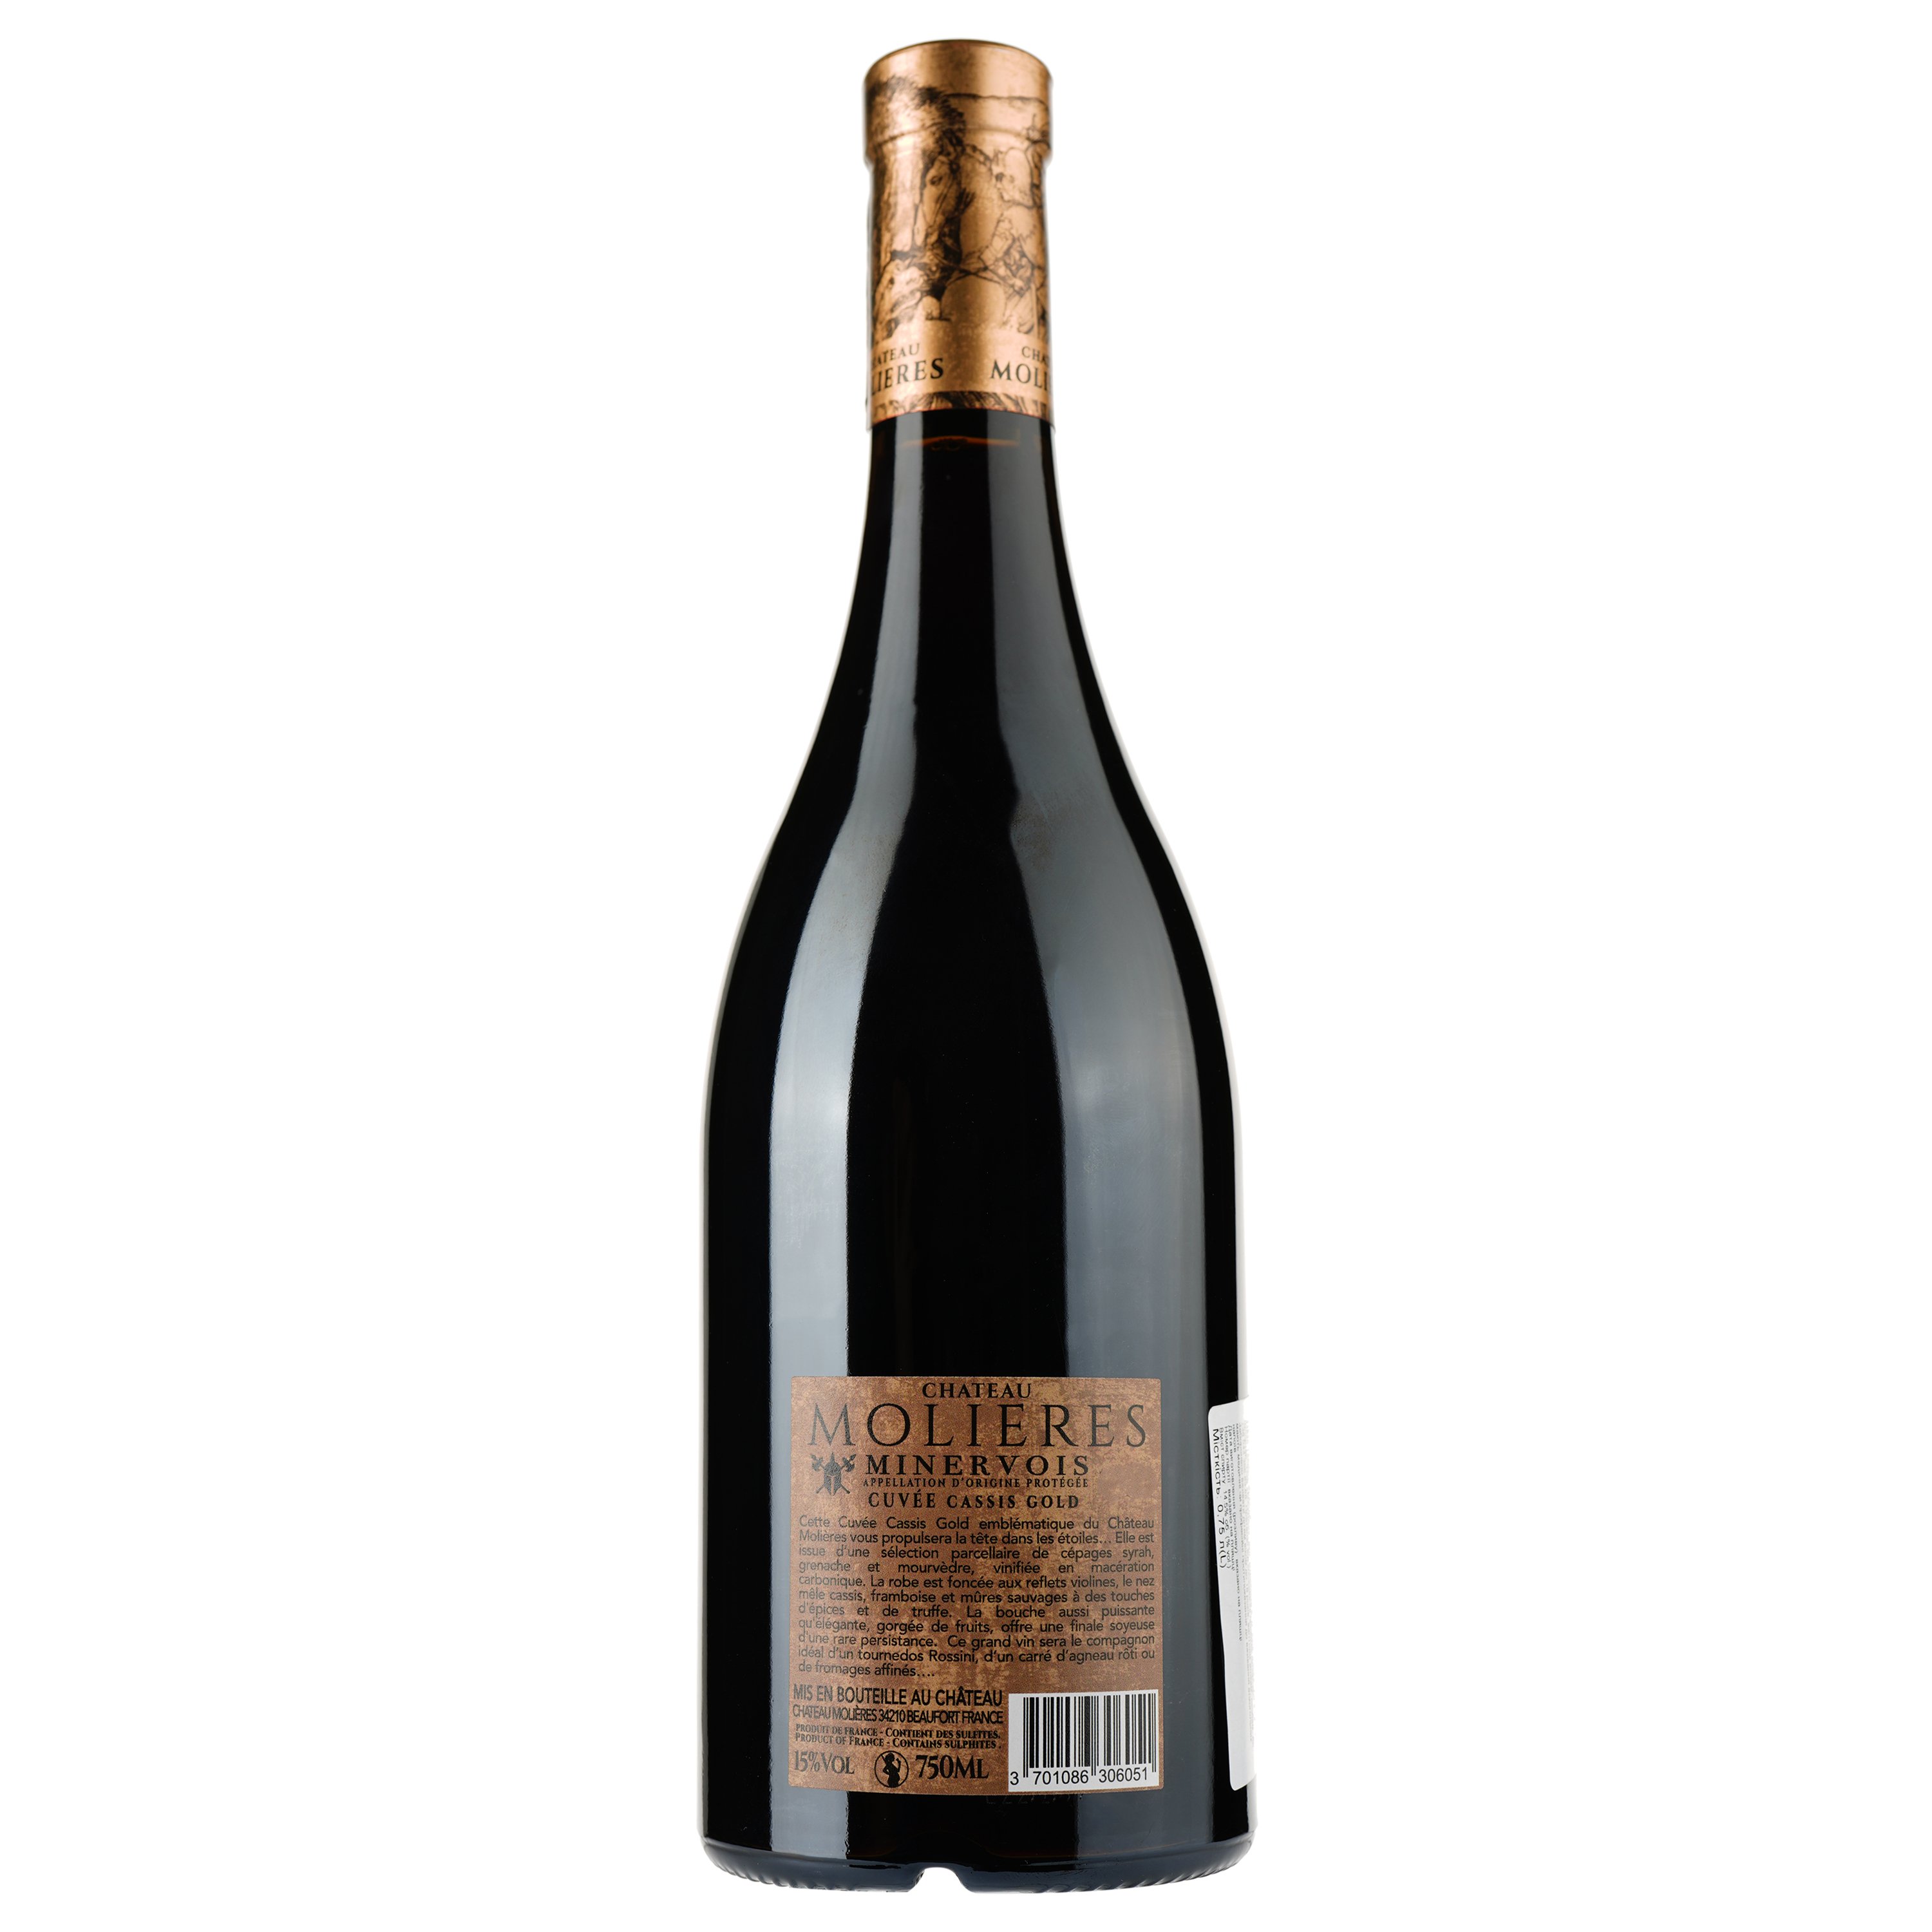 Вино Chateau Molieres Cuvee Cassis Gold 2019 Minervois AOP, красное, сухое, 0,75 л - фото 2